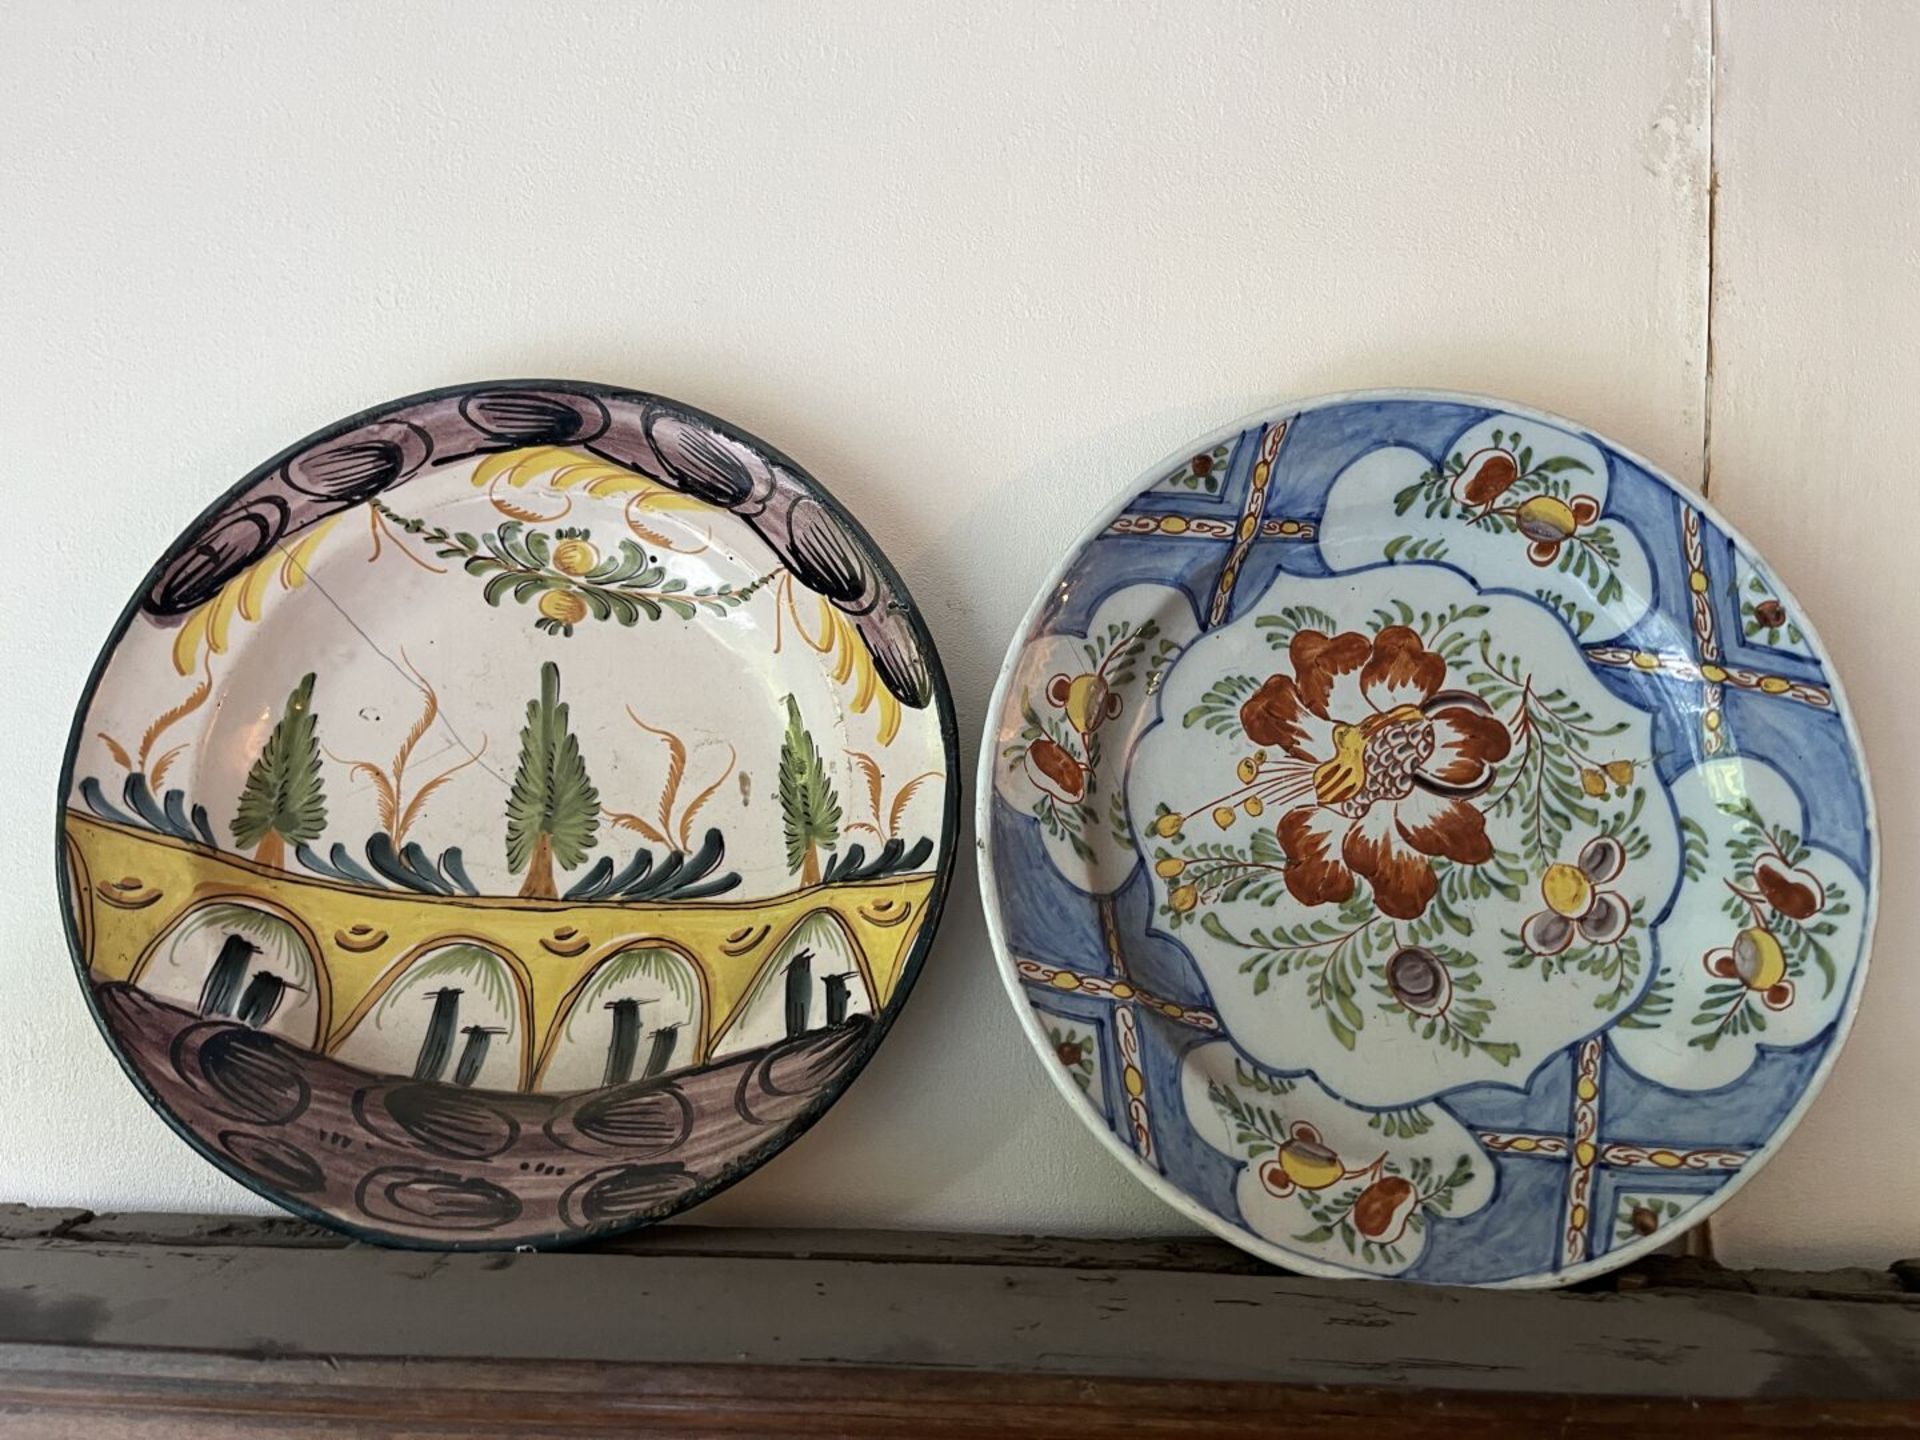 Deux plats circulaire, l'un en faïence de Delft, l'autre en faïence d'Espagne Faïence de grand feu - Image 3 of 3